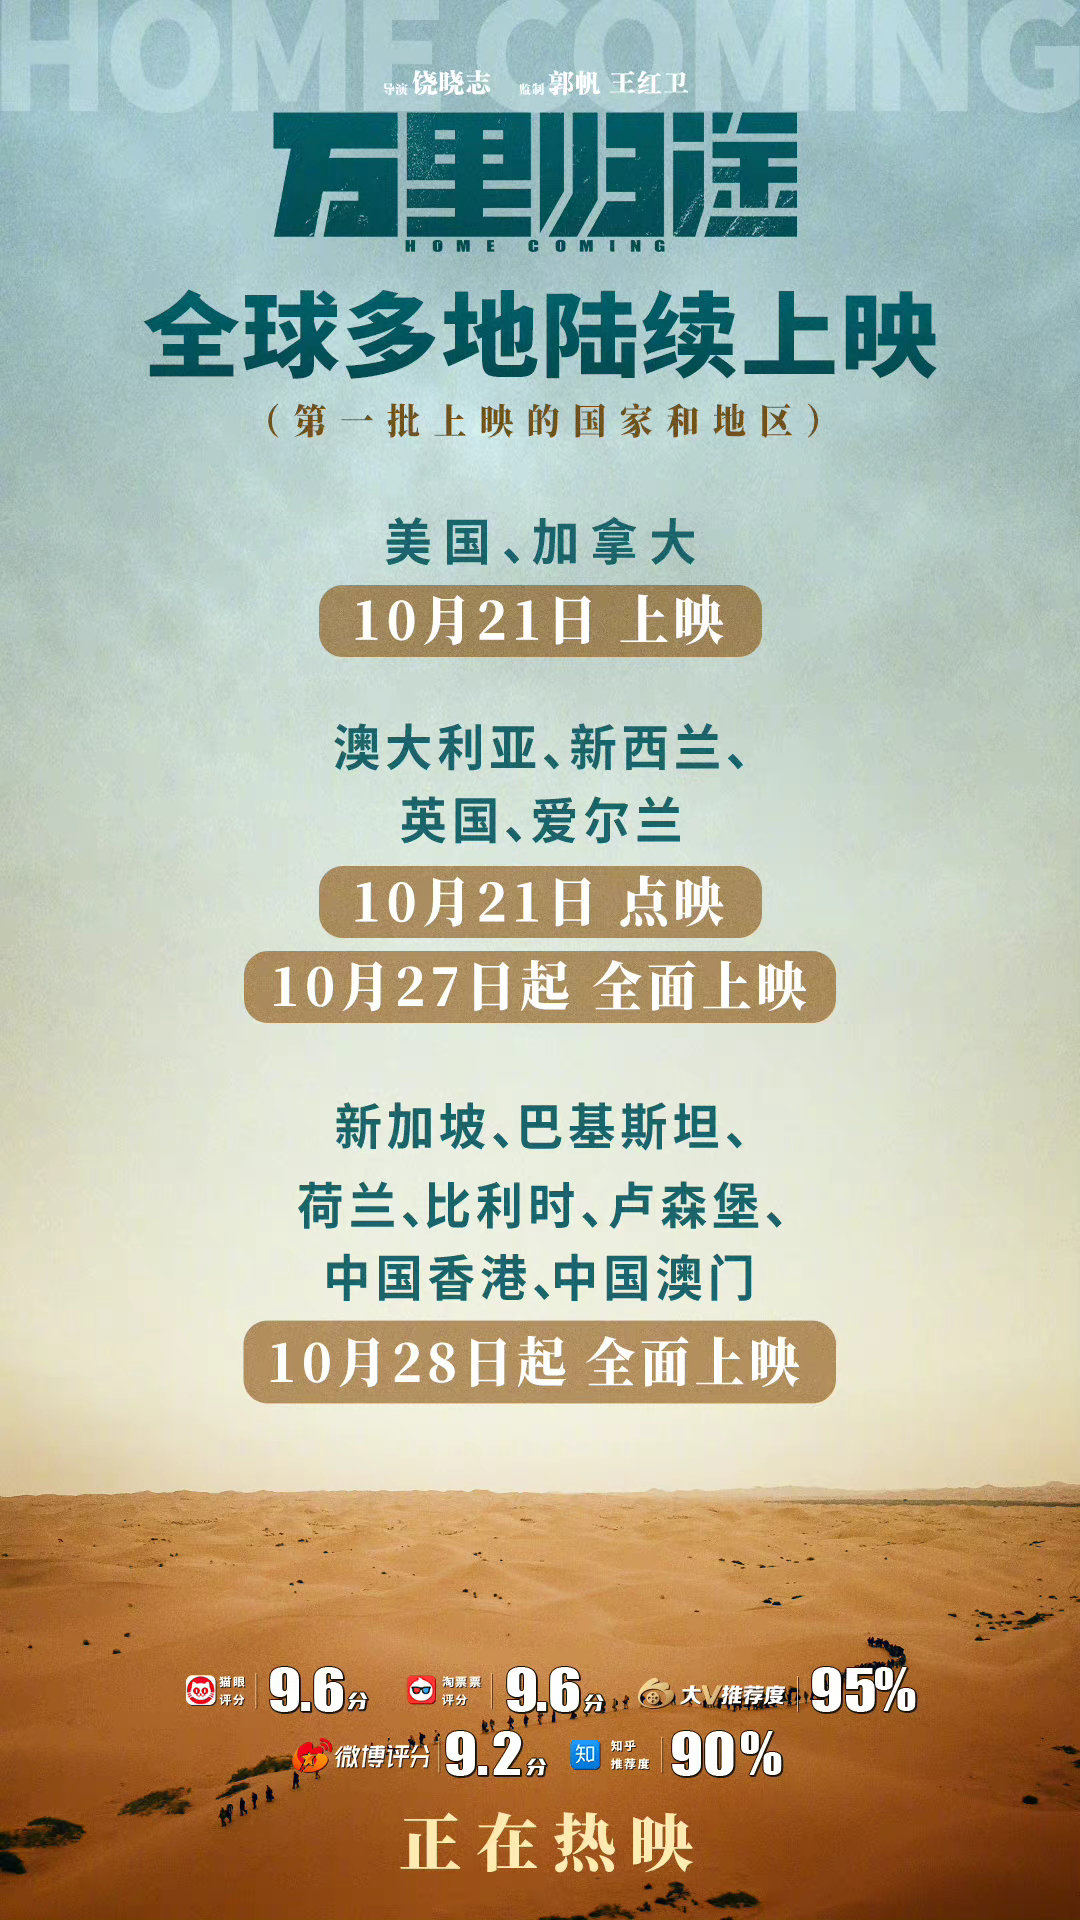 撤侨题材电影《万里归途》将于10月21日起在全球多地陆续上映